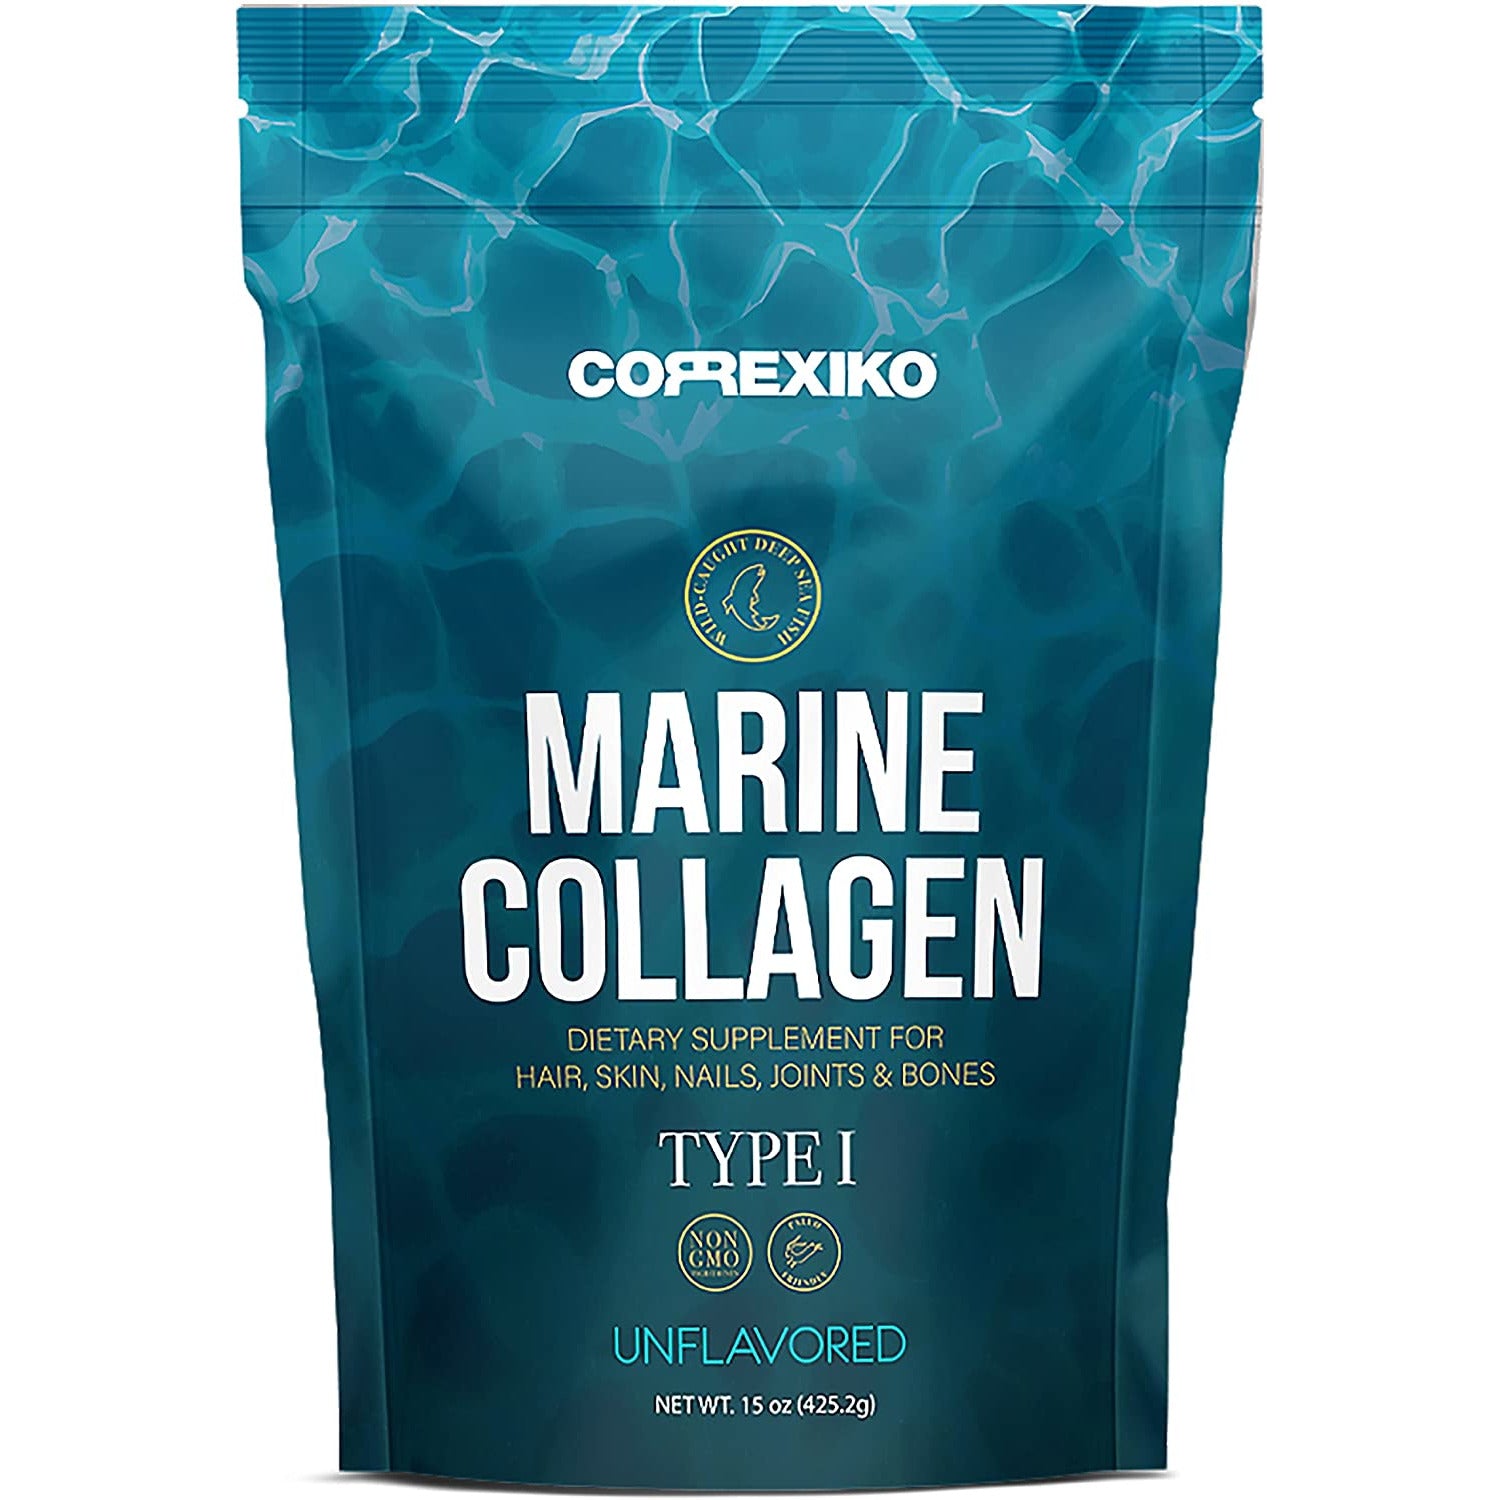 Collagen marine premium. Марине коллаген. Коллаген Marine Collagen. Коллаген Марине морской. Маринэ коллаген +.